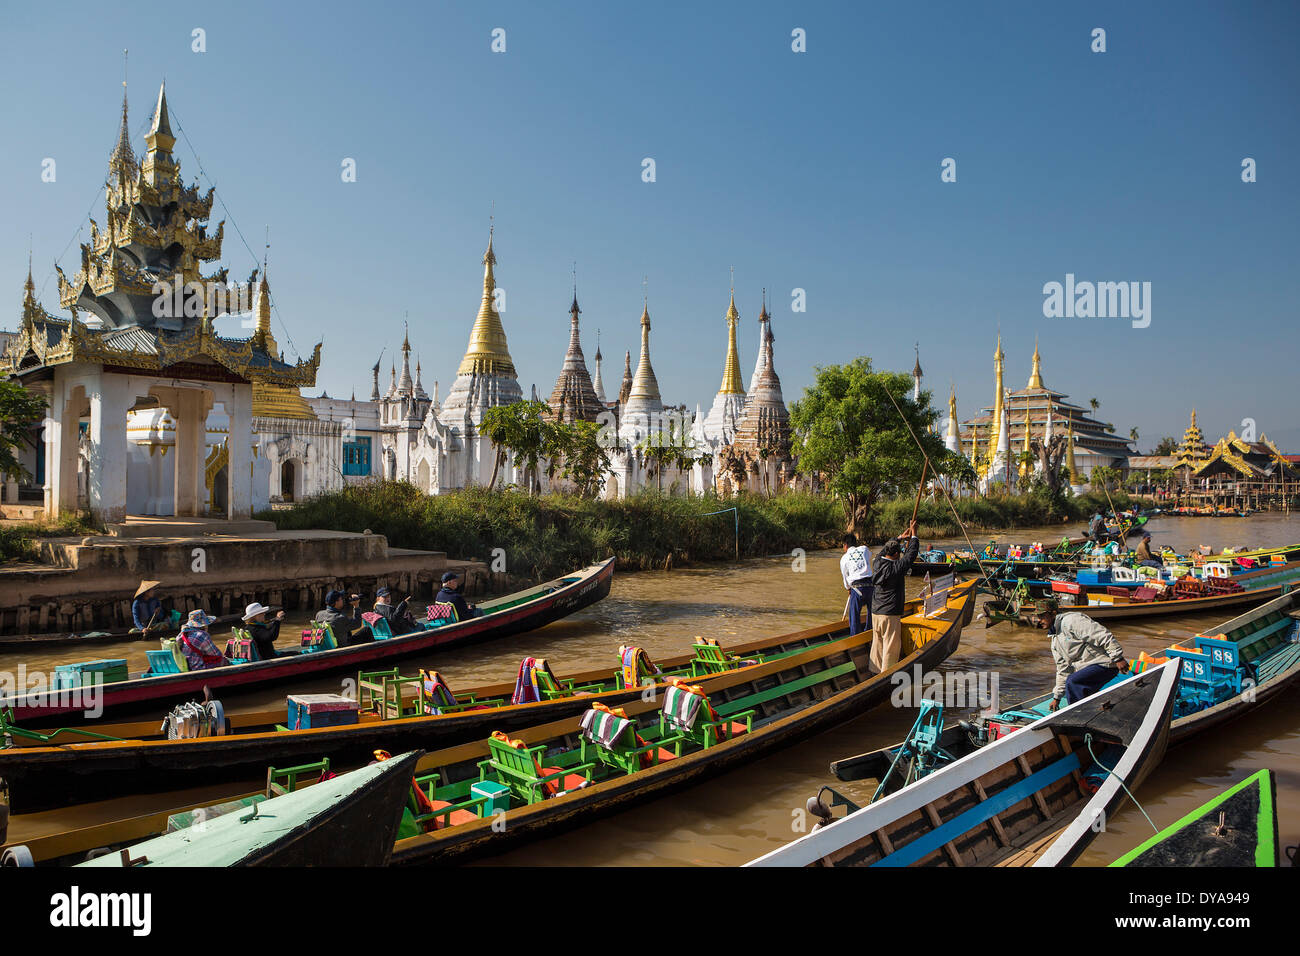 Iwama Ville Asie Birmanie Myanmar bateau bateaux flottant du canal du lac Inle skyline touristes touristique stupas tr transport Banque D'Images